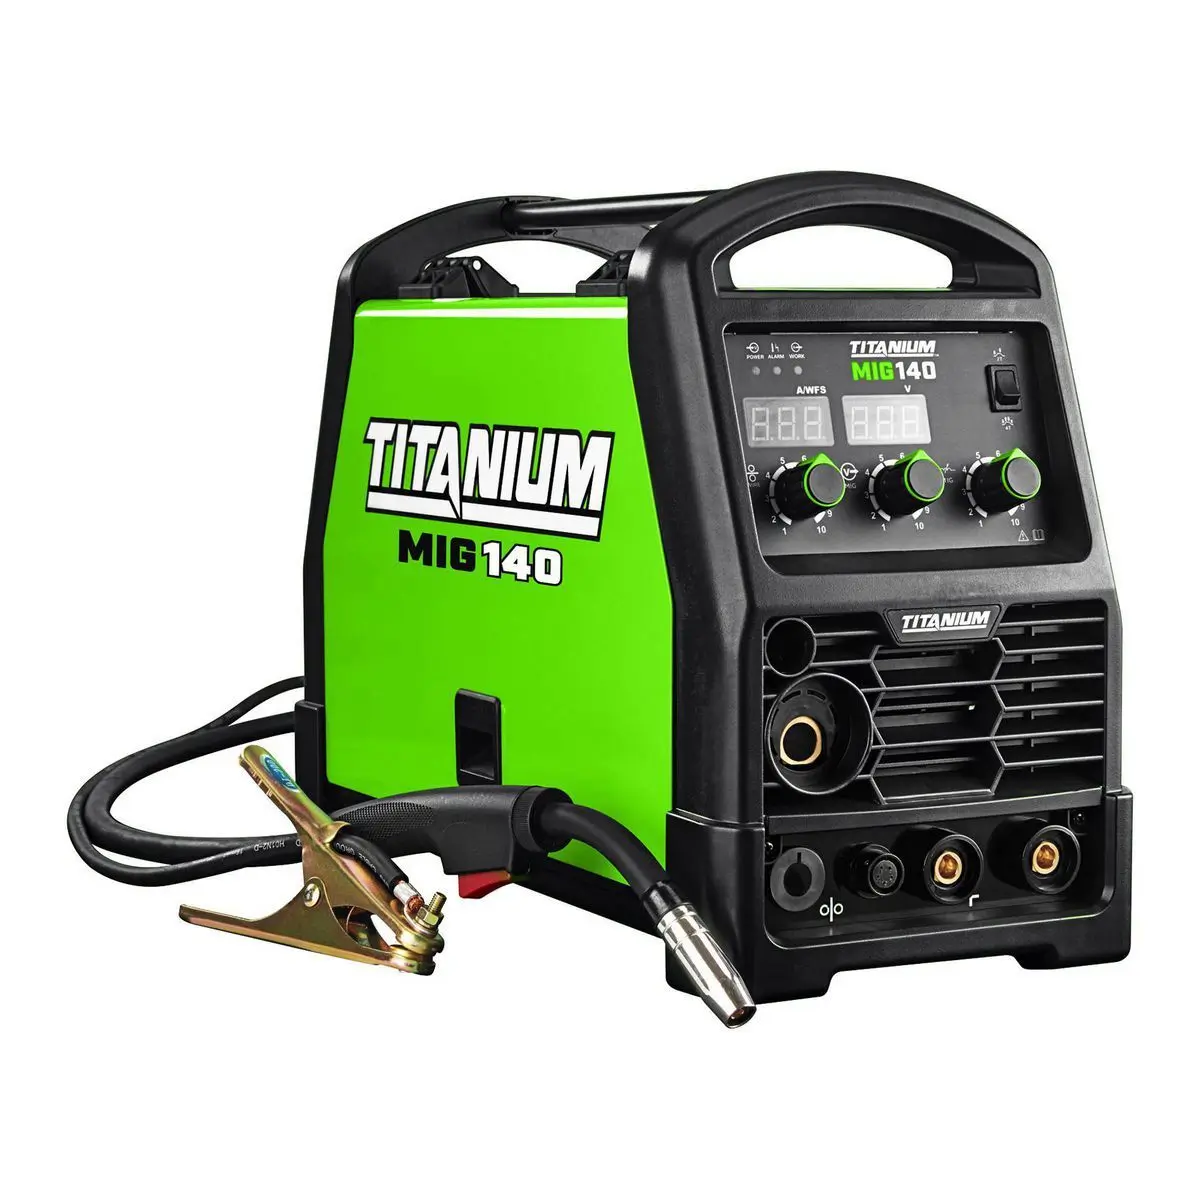 Titanium MIG 140 Welding Machine Review